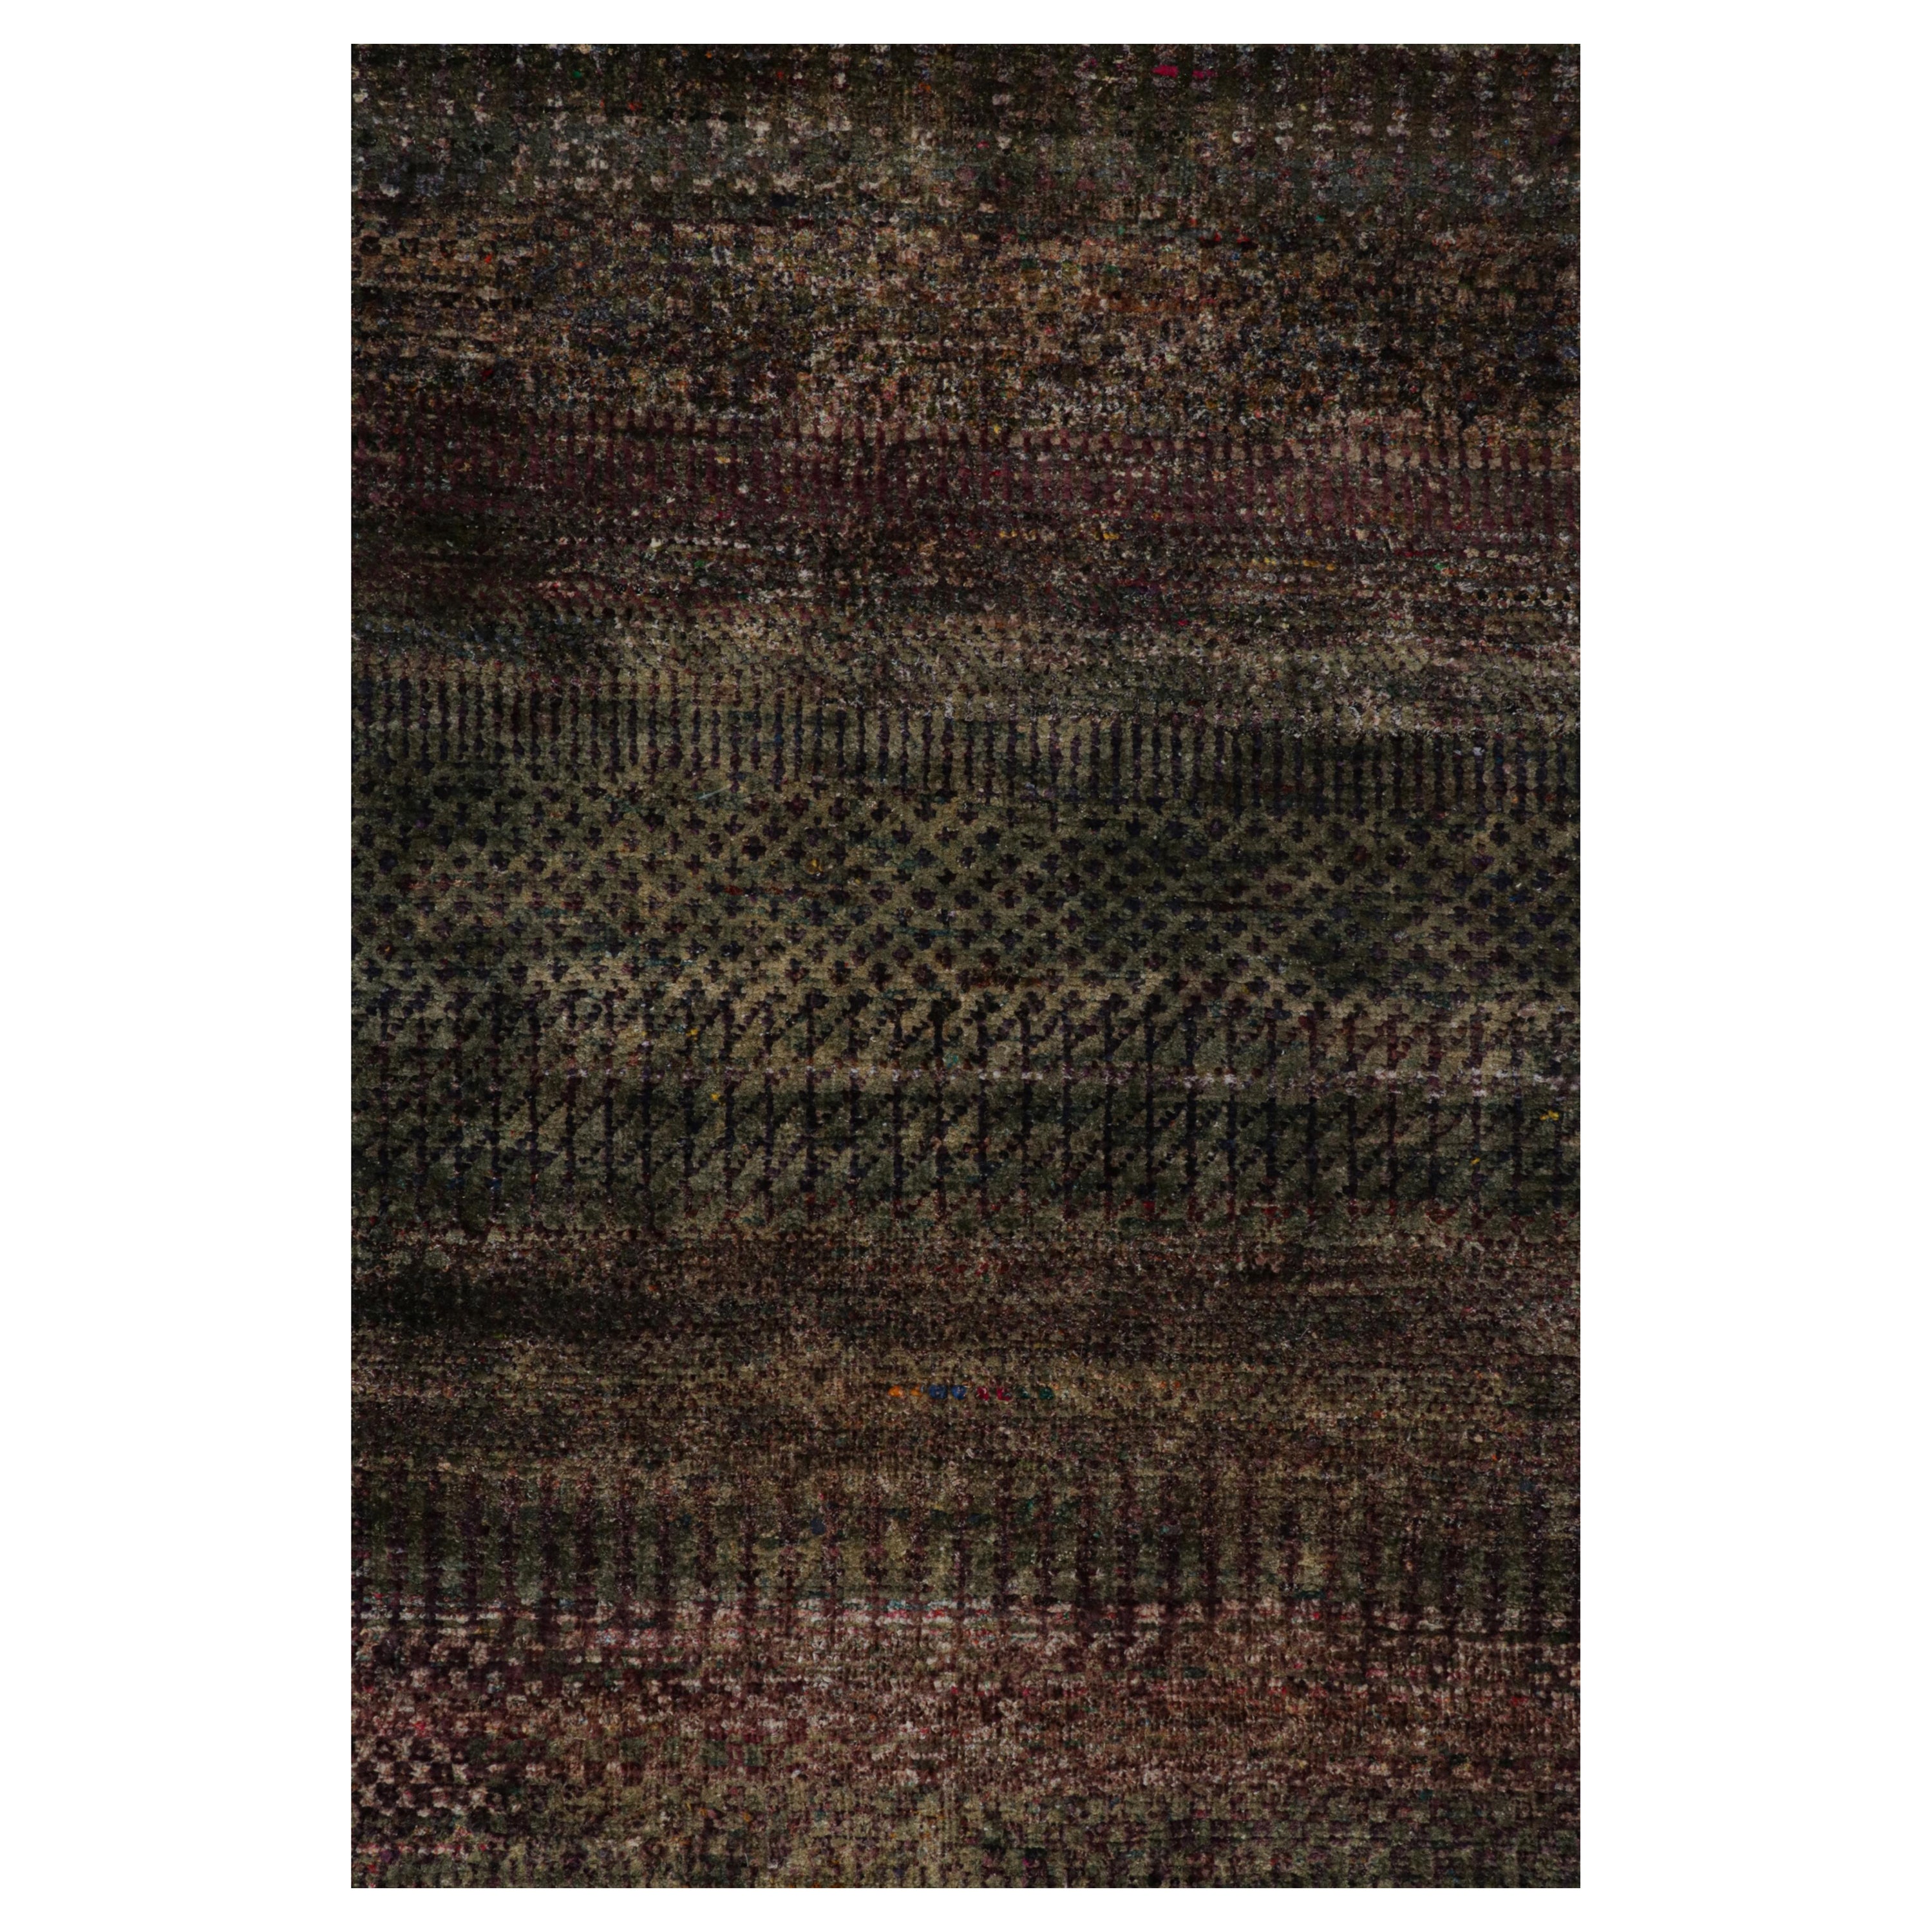 Ce tapis texturé 12x15 est un nouvel ajout audacieux à la collection Texture of Color de Rug & Kilim. Il est fabriqué en soie nouée à la main et reprend le thème de cette collection, en particulier une teinture végétale comme celles utilisées dans